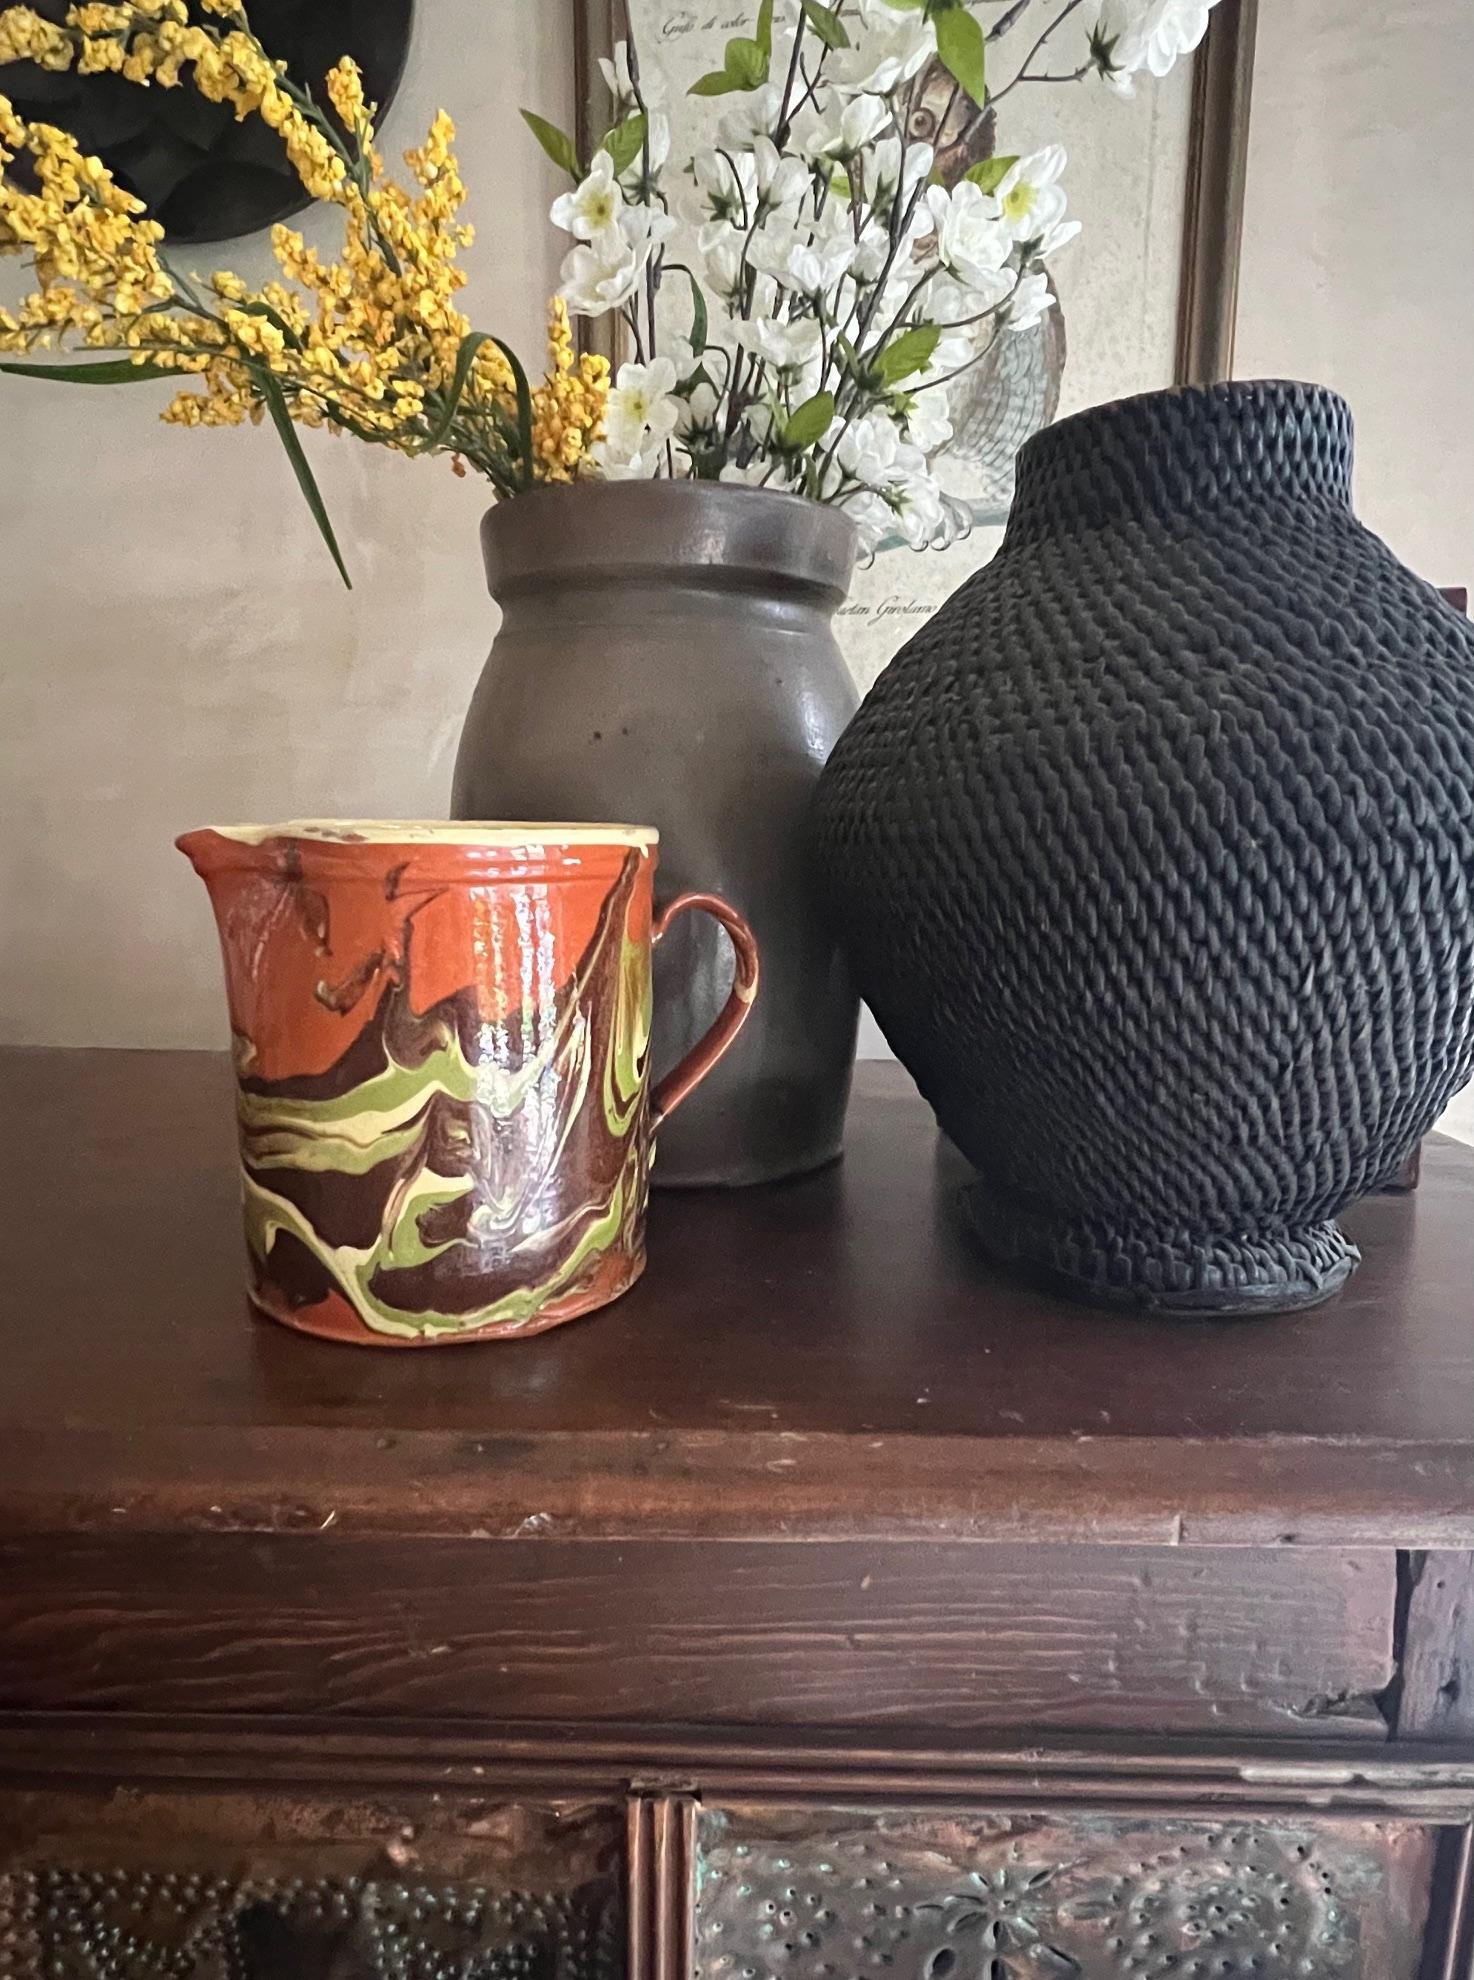 Pichet en céramique Jaspe en terre cuite avec un motif marbré d'orange brûlé, de vert et de jaune beurre. Ce pichet a été fabriqué en Savoie à la fin du 19e siècle. Il est marqué d'un 8 sur le fond.

Les poteries de MEAN sont typiquement des